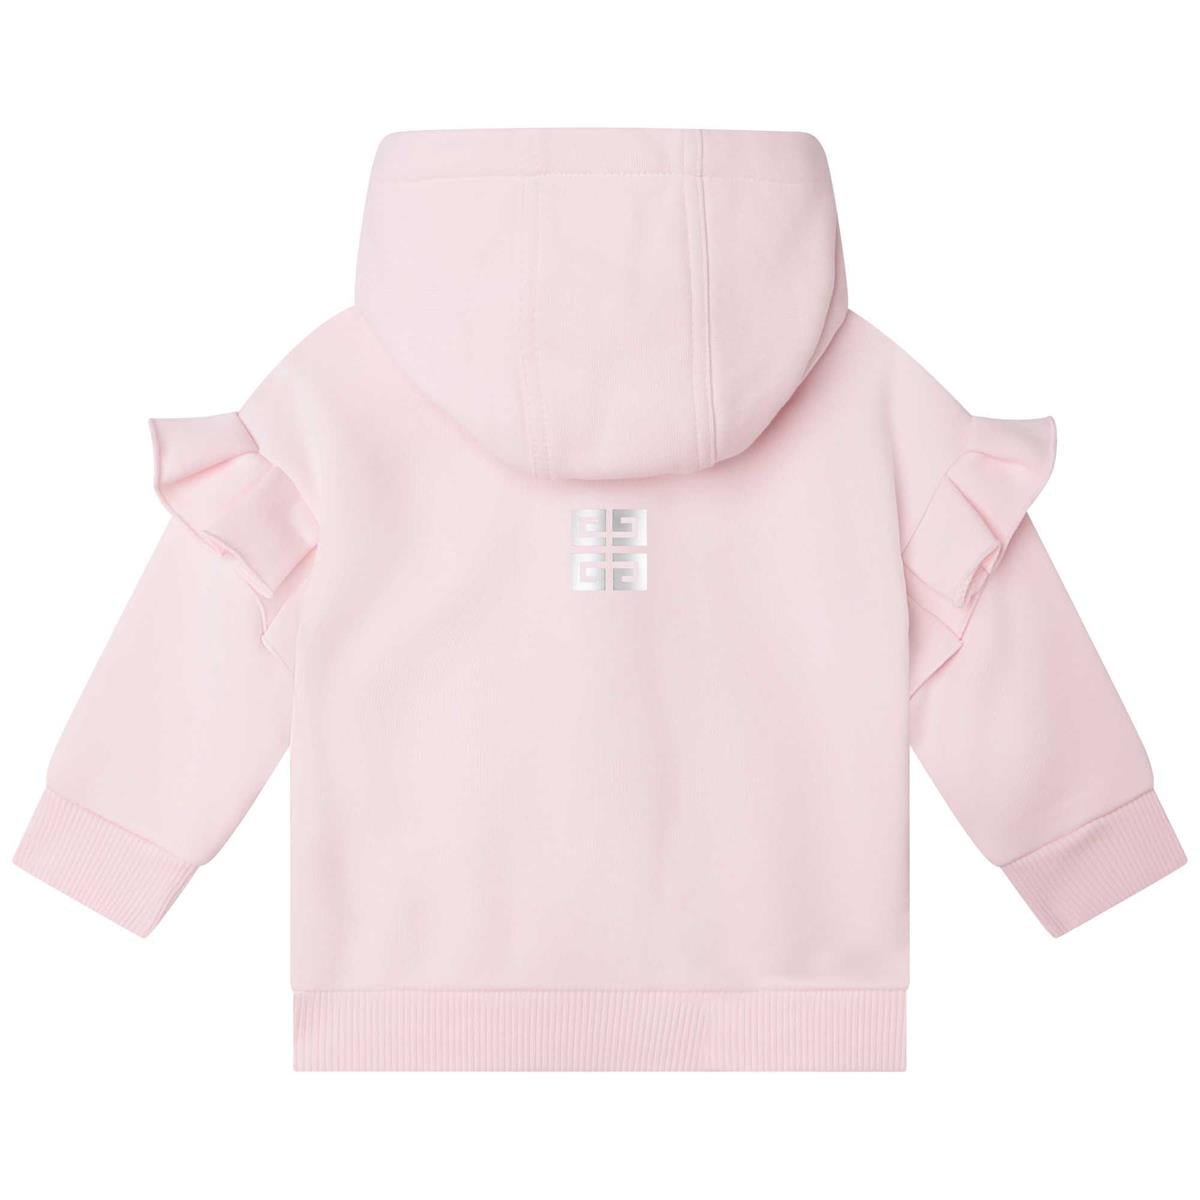 Baby Boys & Girls Pink Hooded Sweatshirt